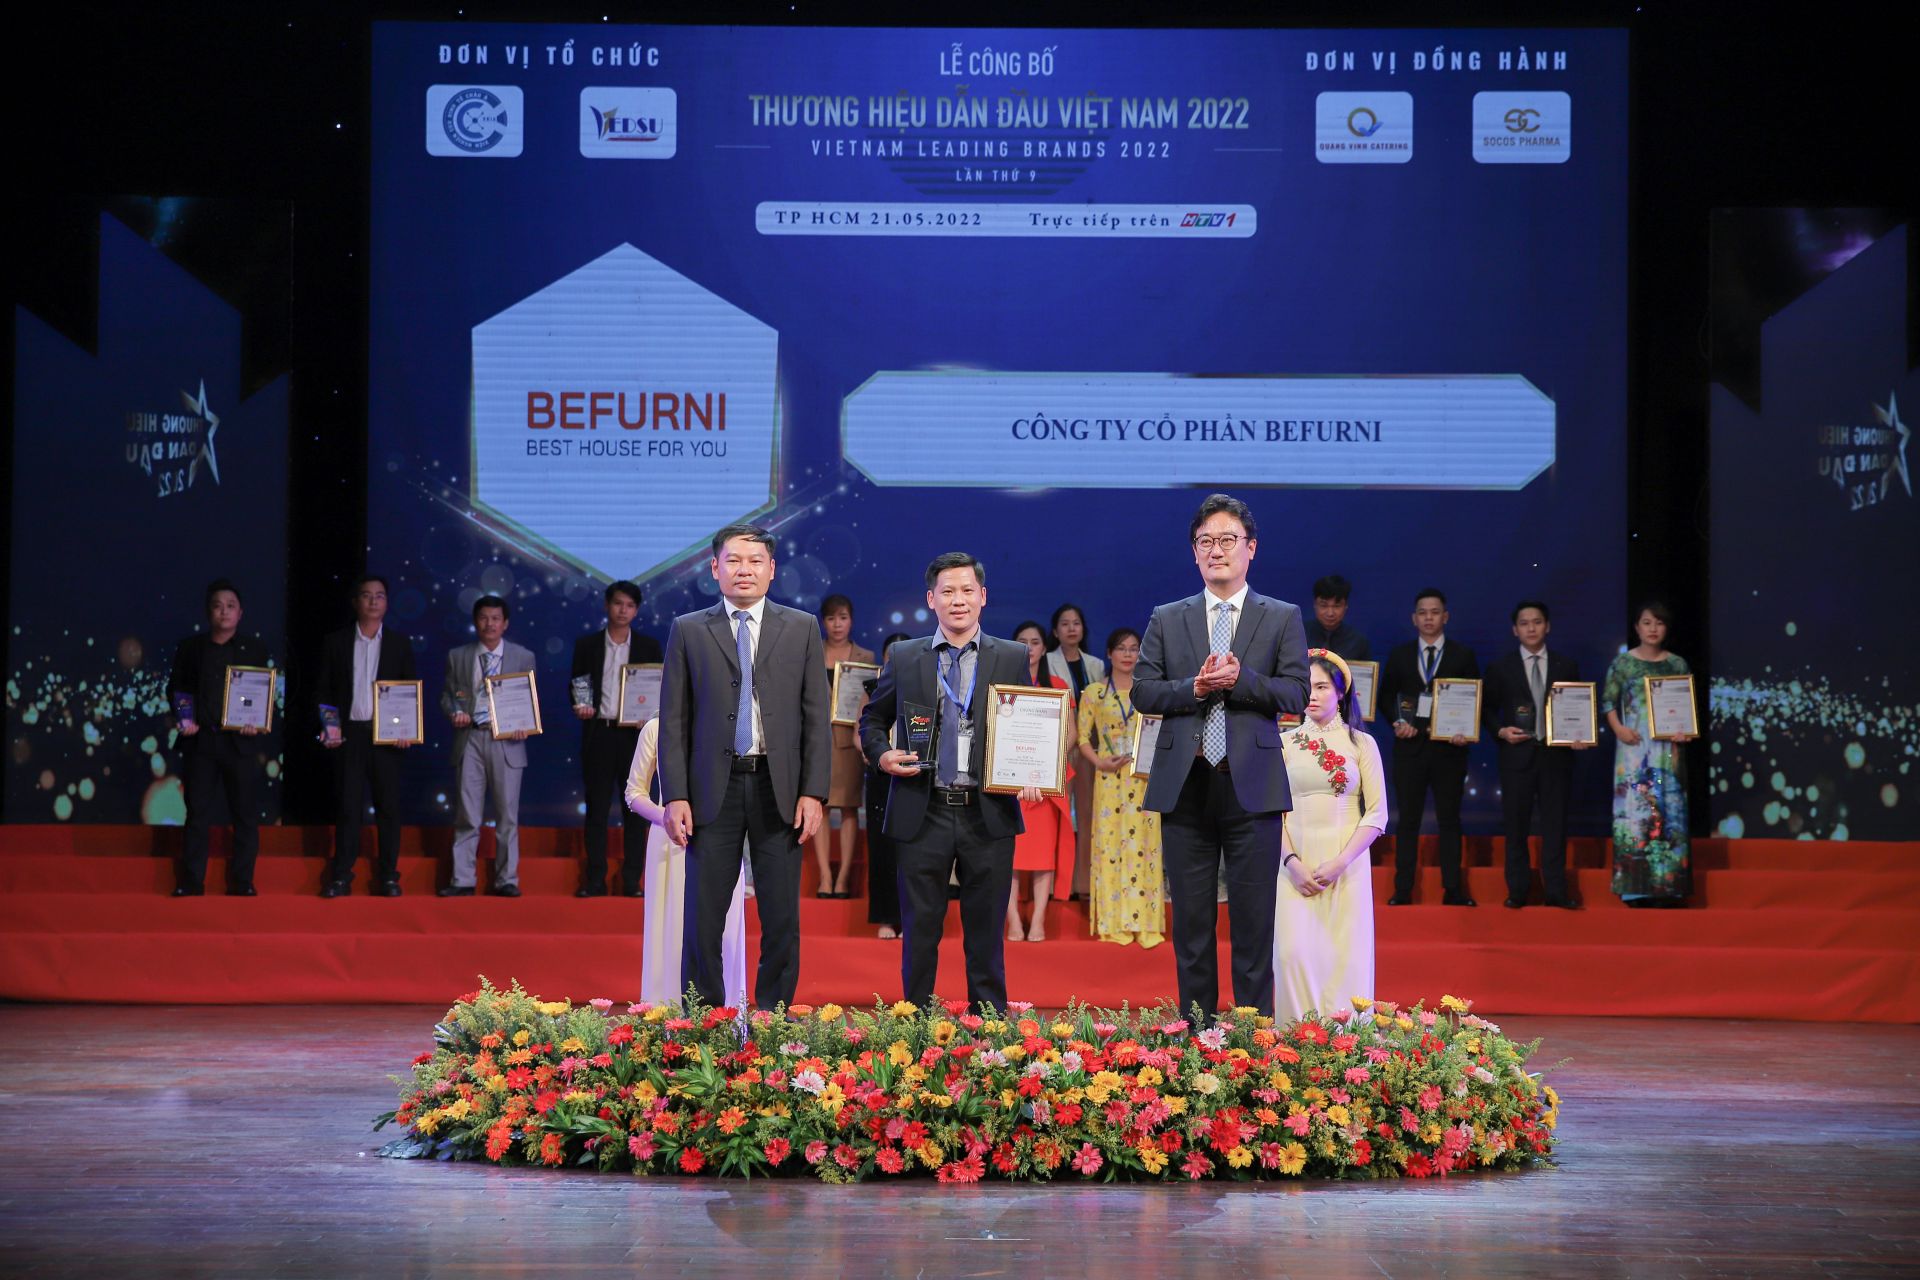 BEFURNI – TOP 10 Thương hiệu Dẫn đầu Việt Nam 2022